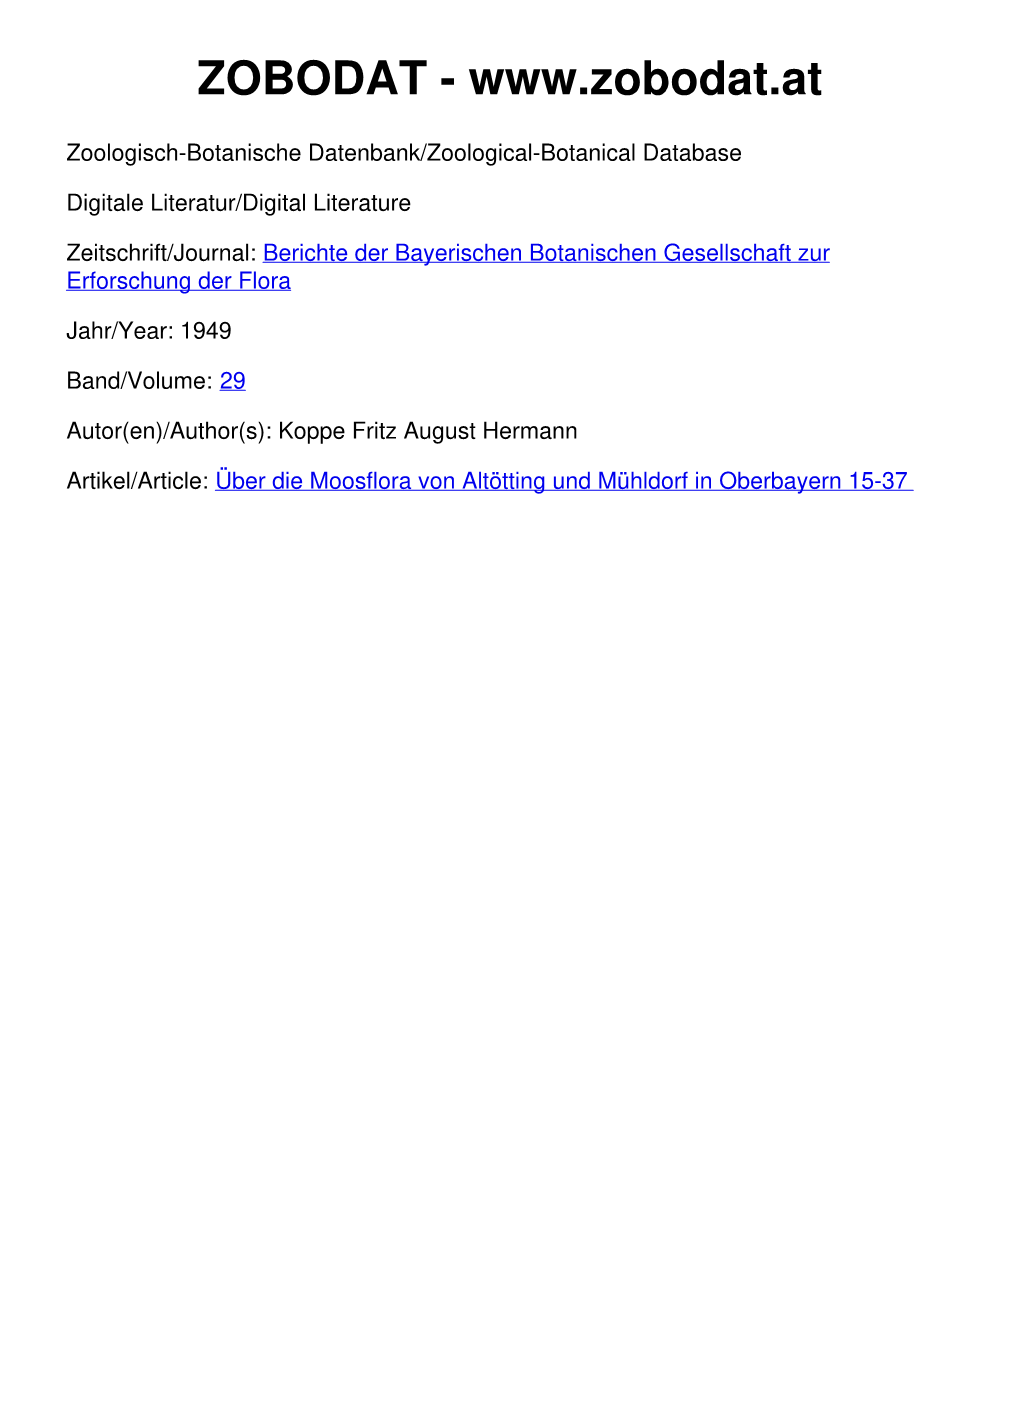 Über Die Moosflora Von Altötting Und Mühldorf in Oberbayern 15-37 ©Bayerische Botanische Gesellschaft; Download Unter